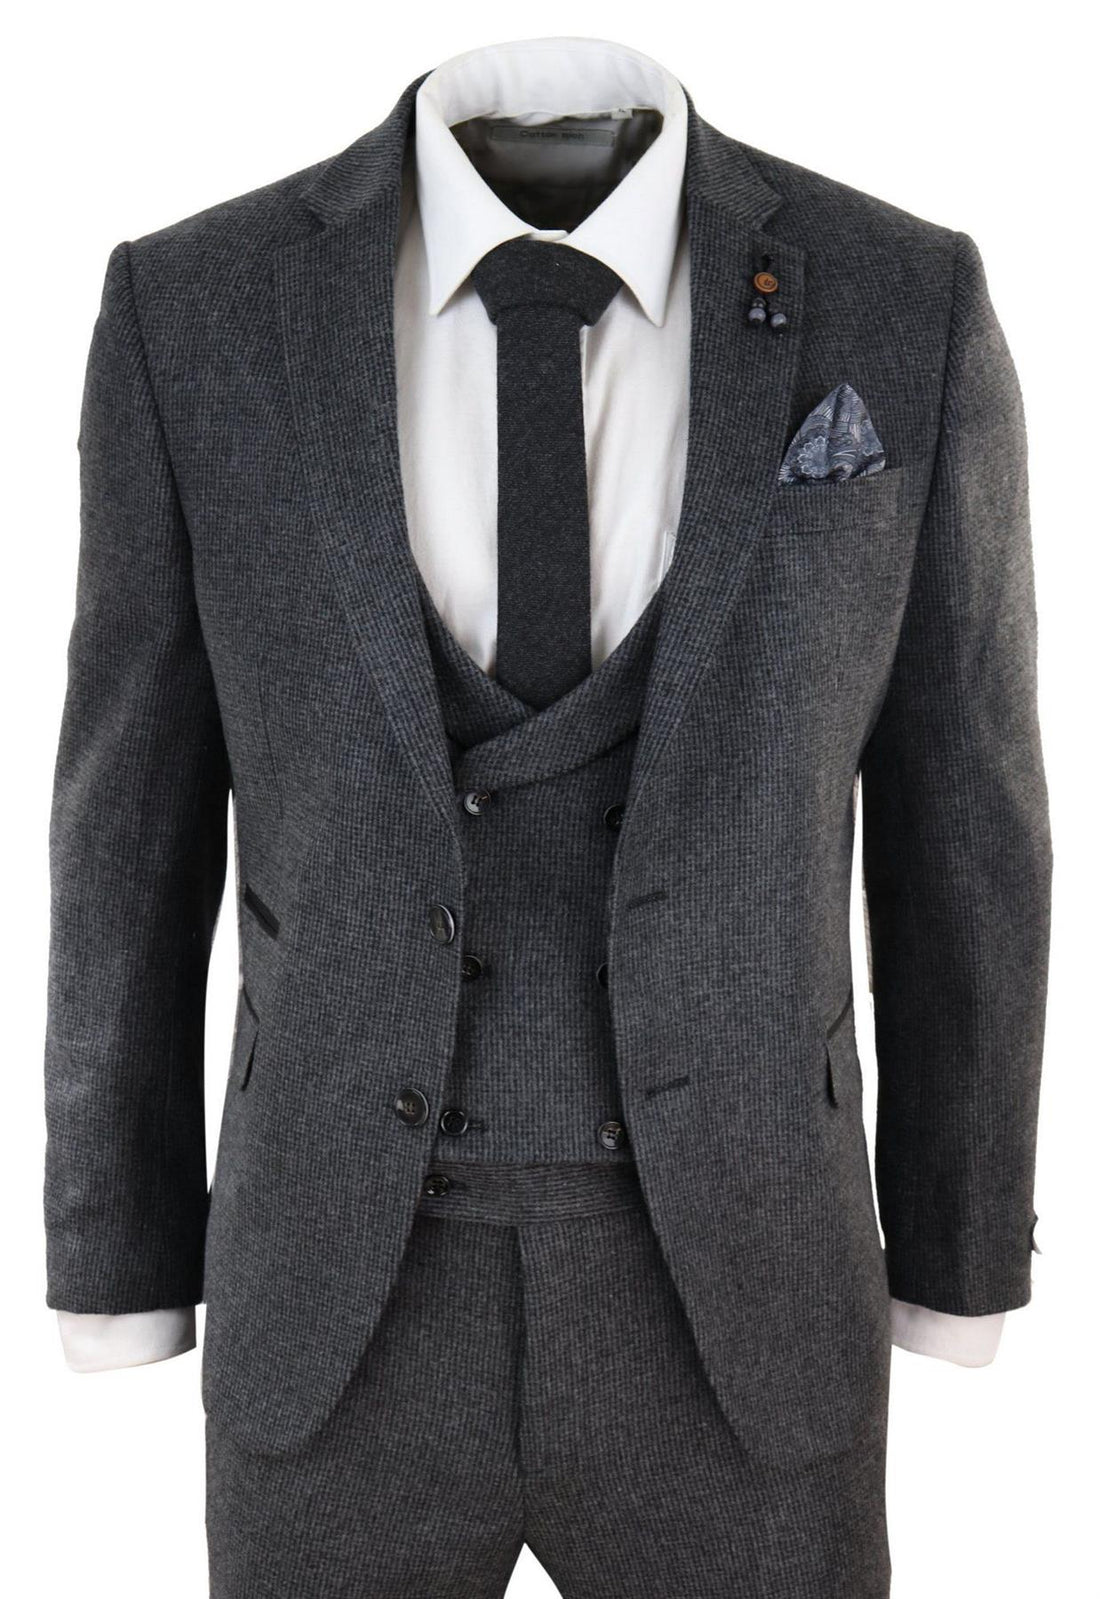 Mens Grey 3 Piece Tweed Suit Vintage Harringbone 1920s Retro Peaky Blinders - Upperclass Fashions 